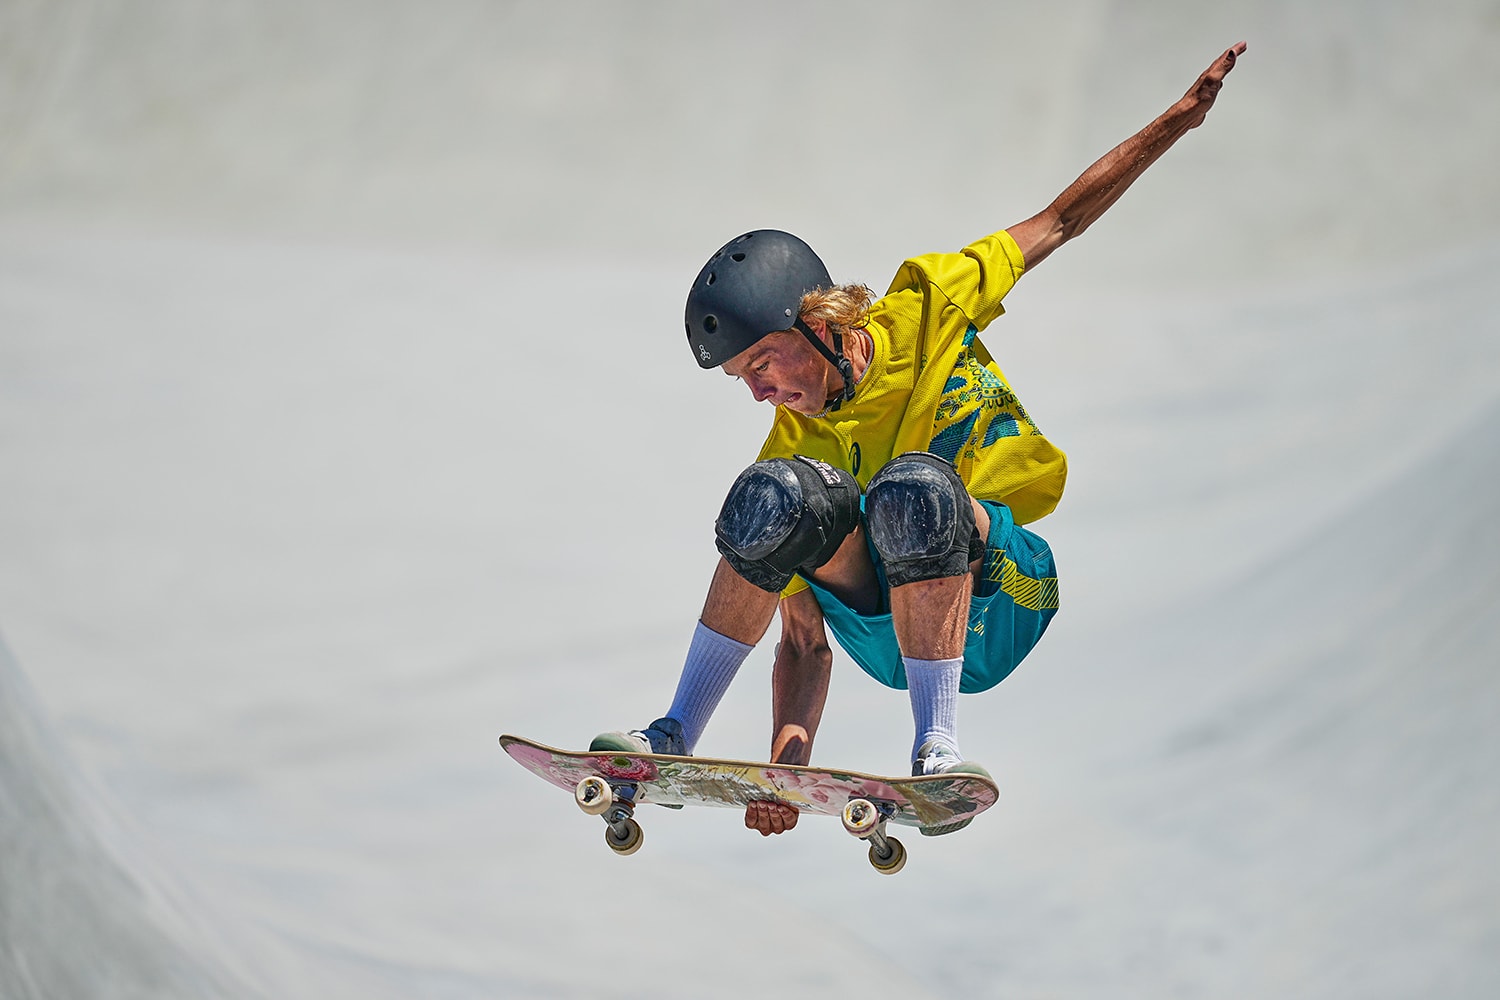 澳洲滑手 Keegan Palmer 以超高分 95.83 奪下東京奧運「男子滑板公園賽」金牌